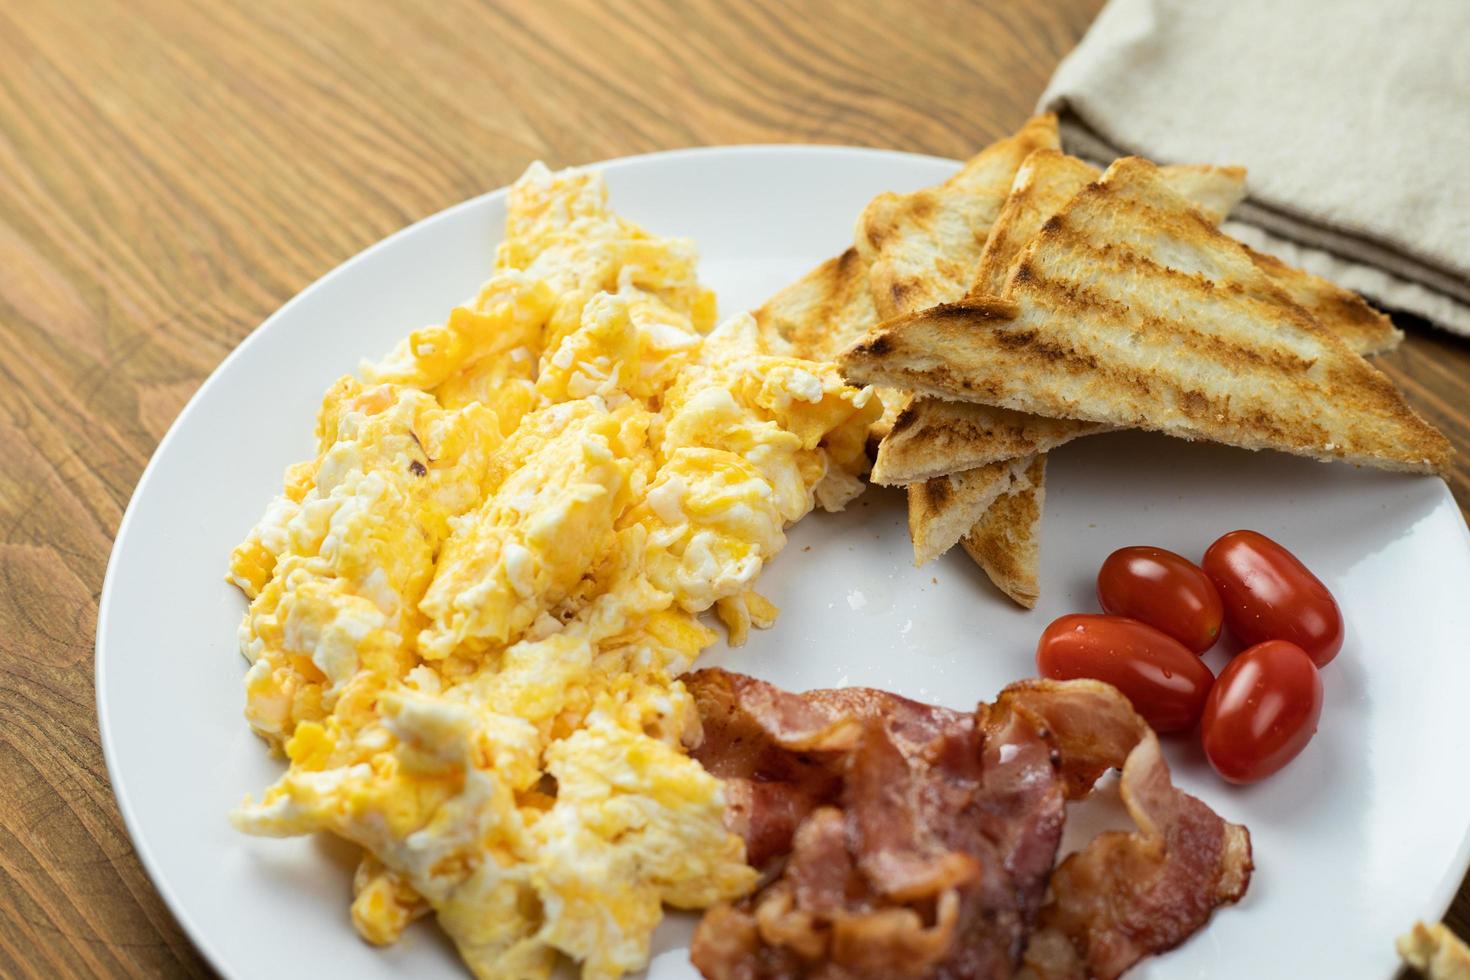 ovos mexidos com bacon e pão grelhado. delicioso café da manhã. foto